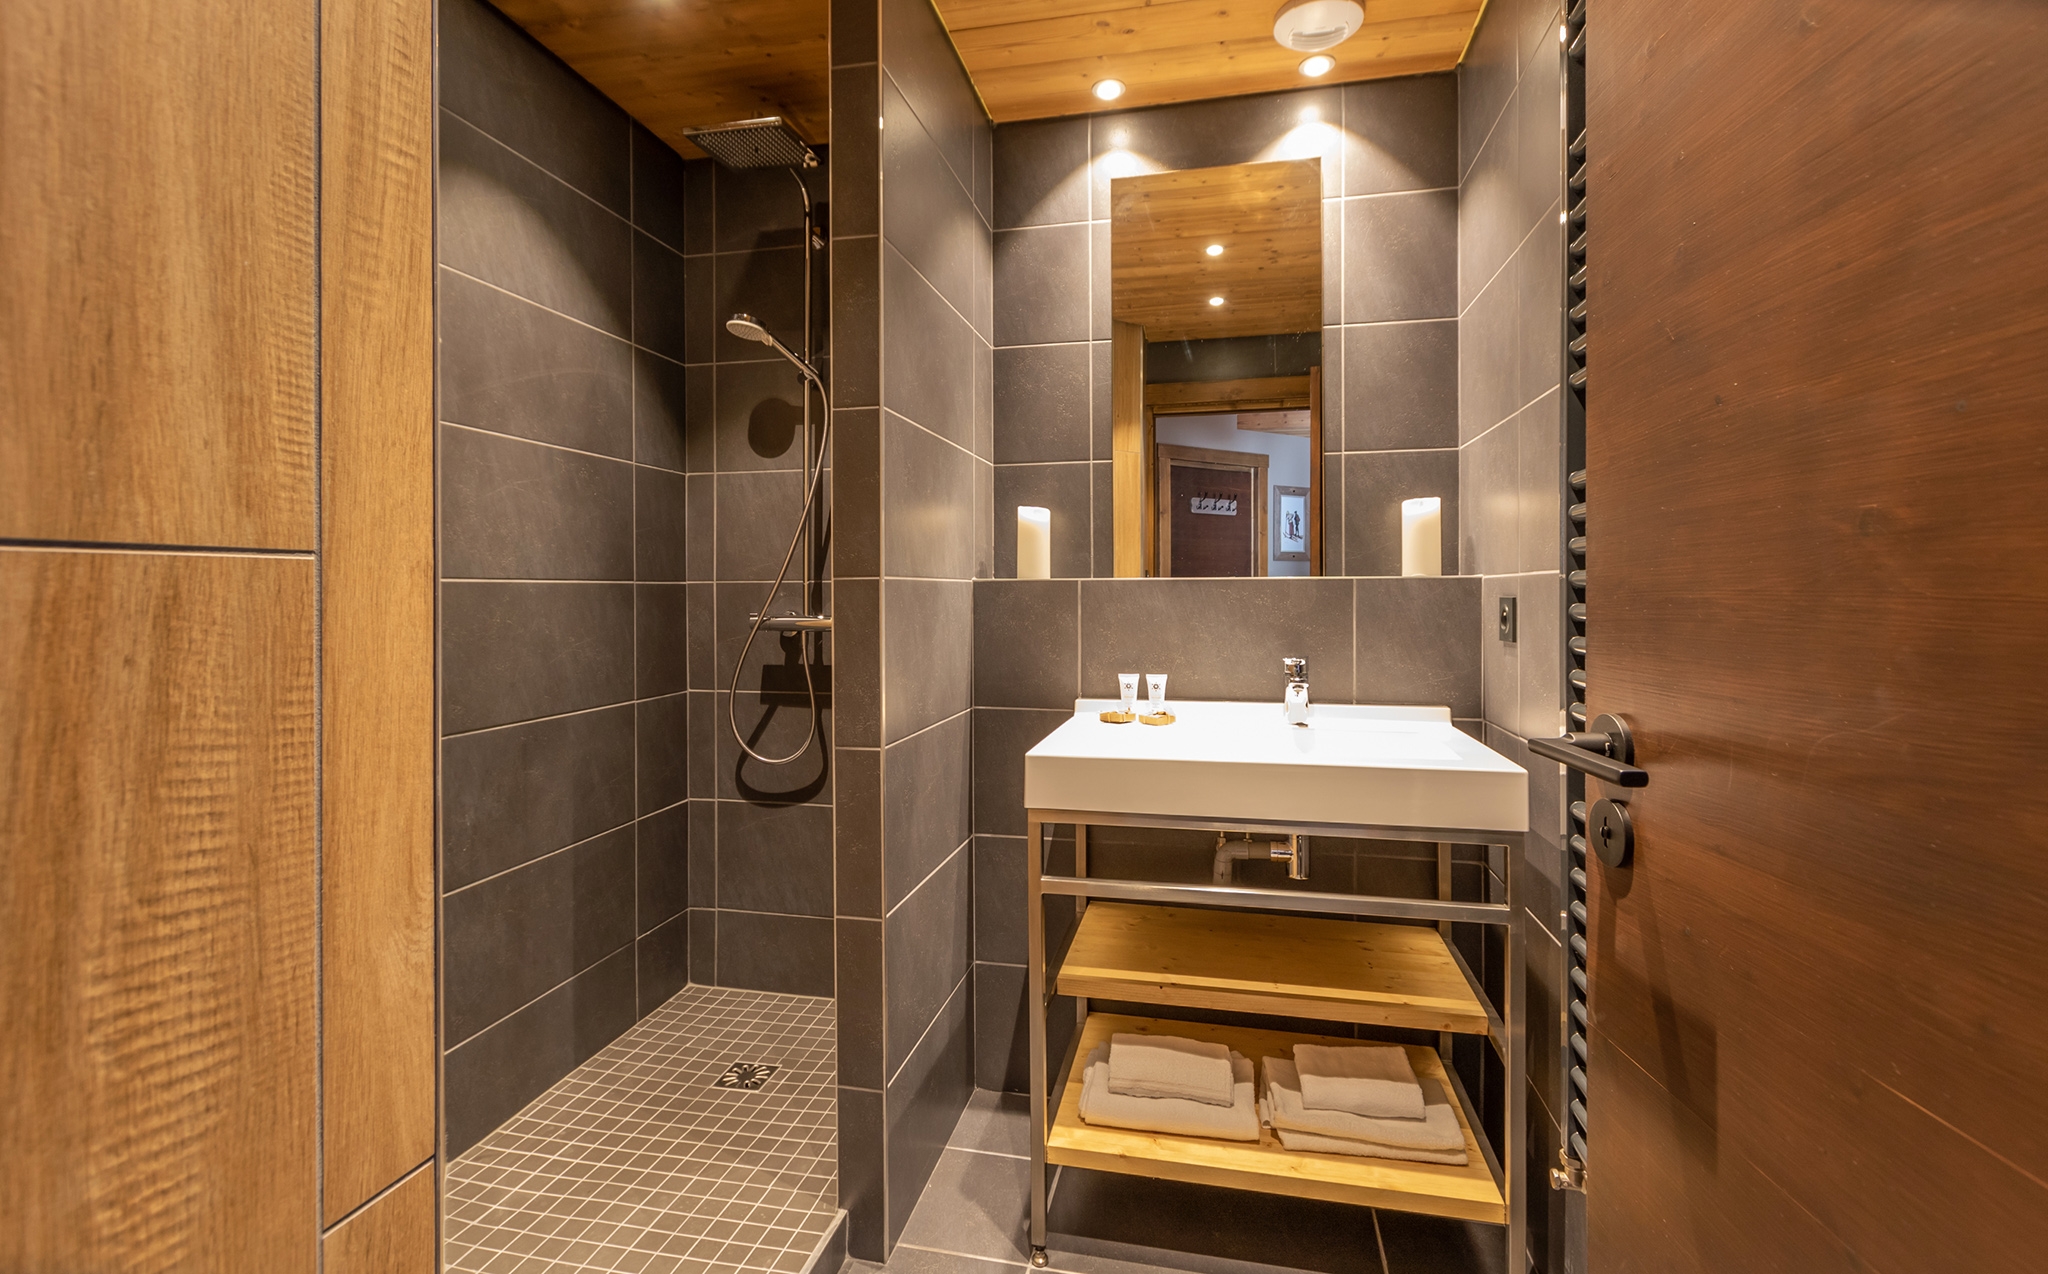 Chalet Altitude: Appartement für 10 Personen - Bad (Beispiel)